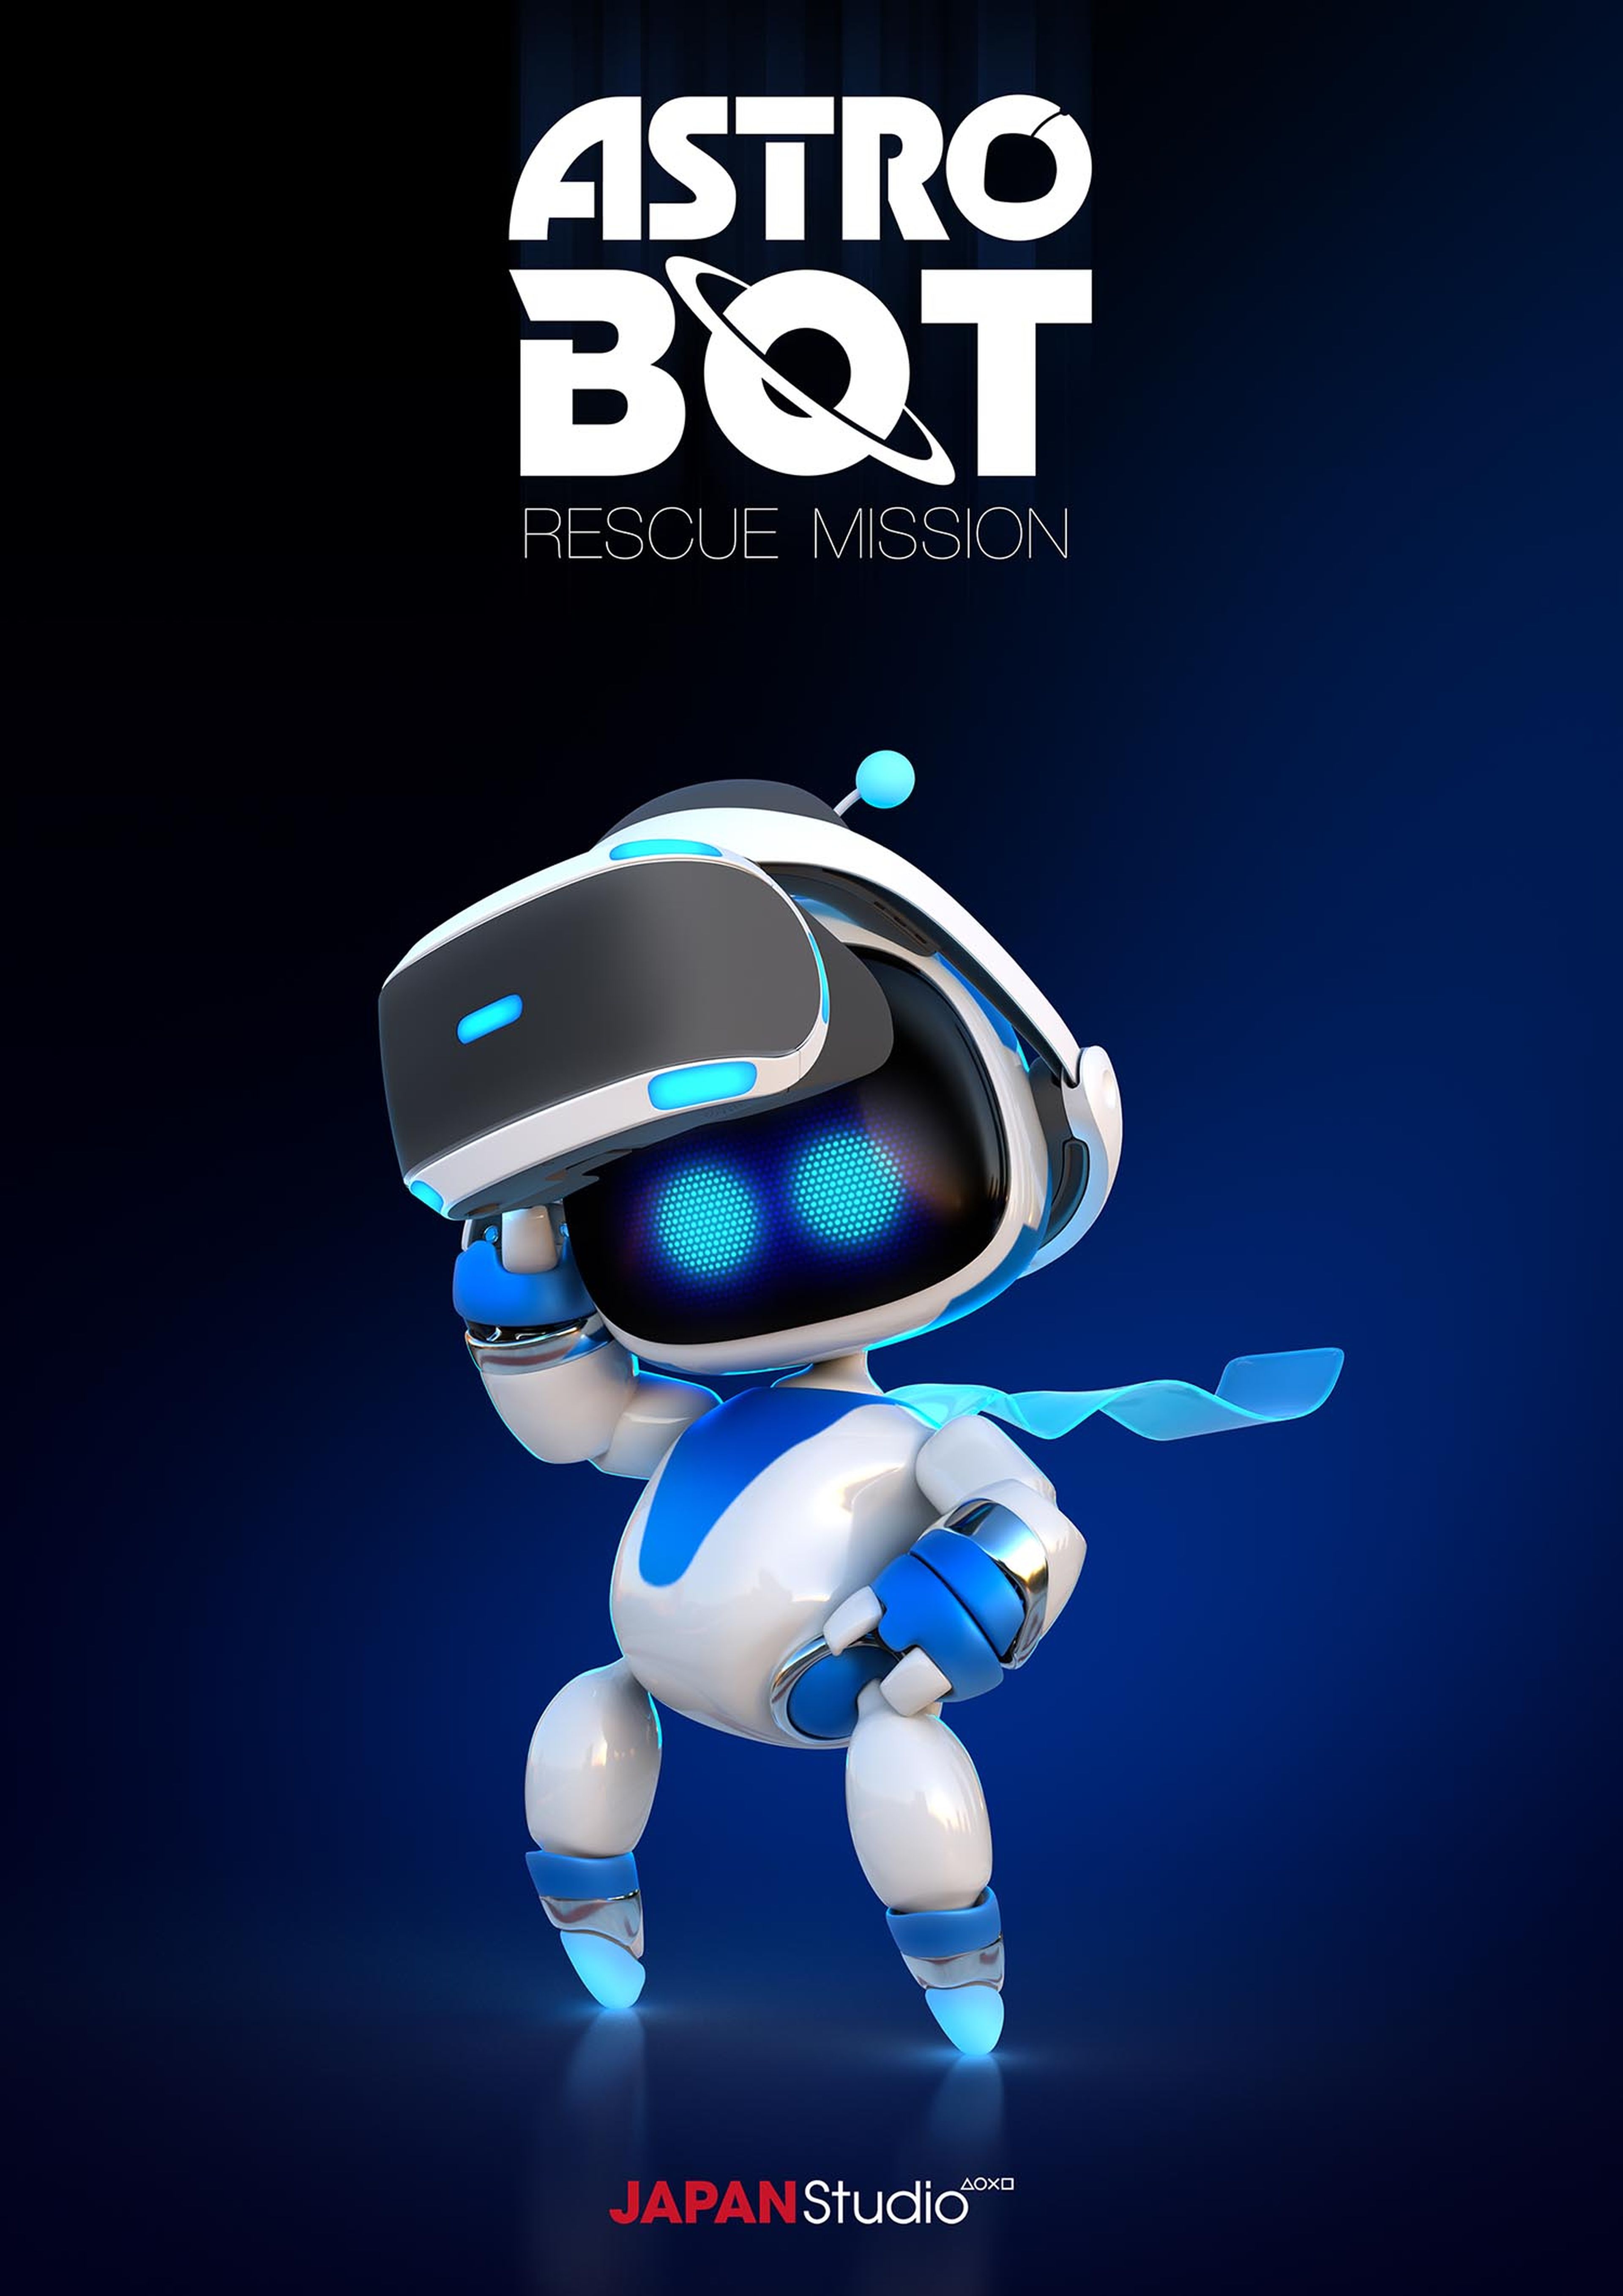 Игры белый робот. АСТРОБОТ игра ps4. Ps3 Astro bot. Астро бот игры для пс4. Astro bot Rescue Mission игра.